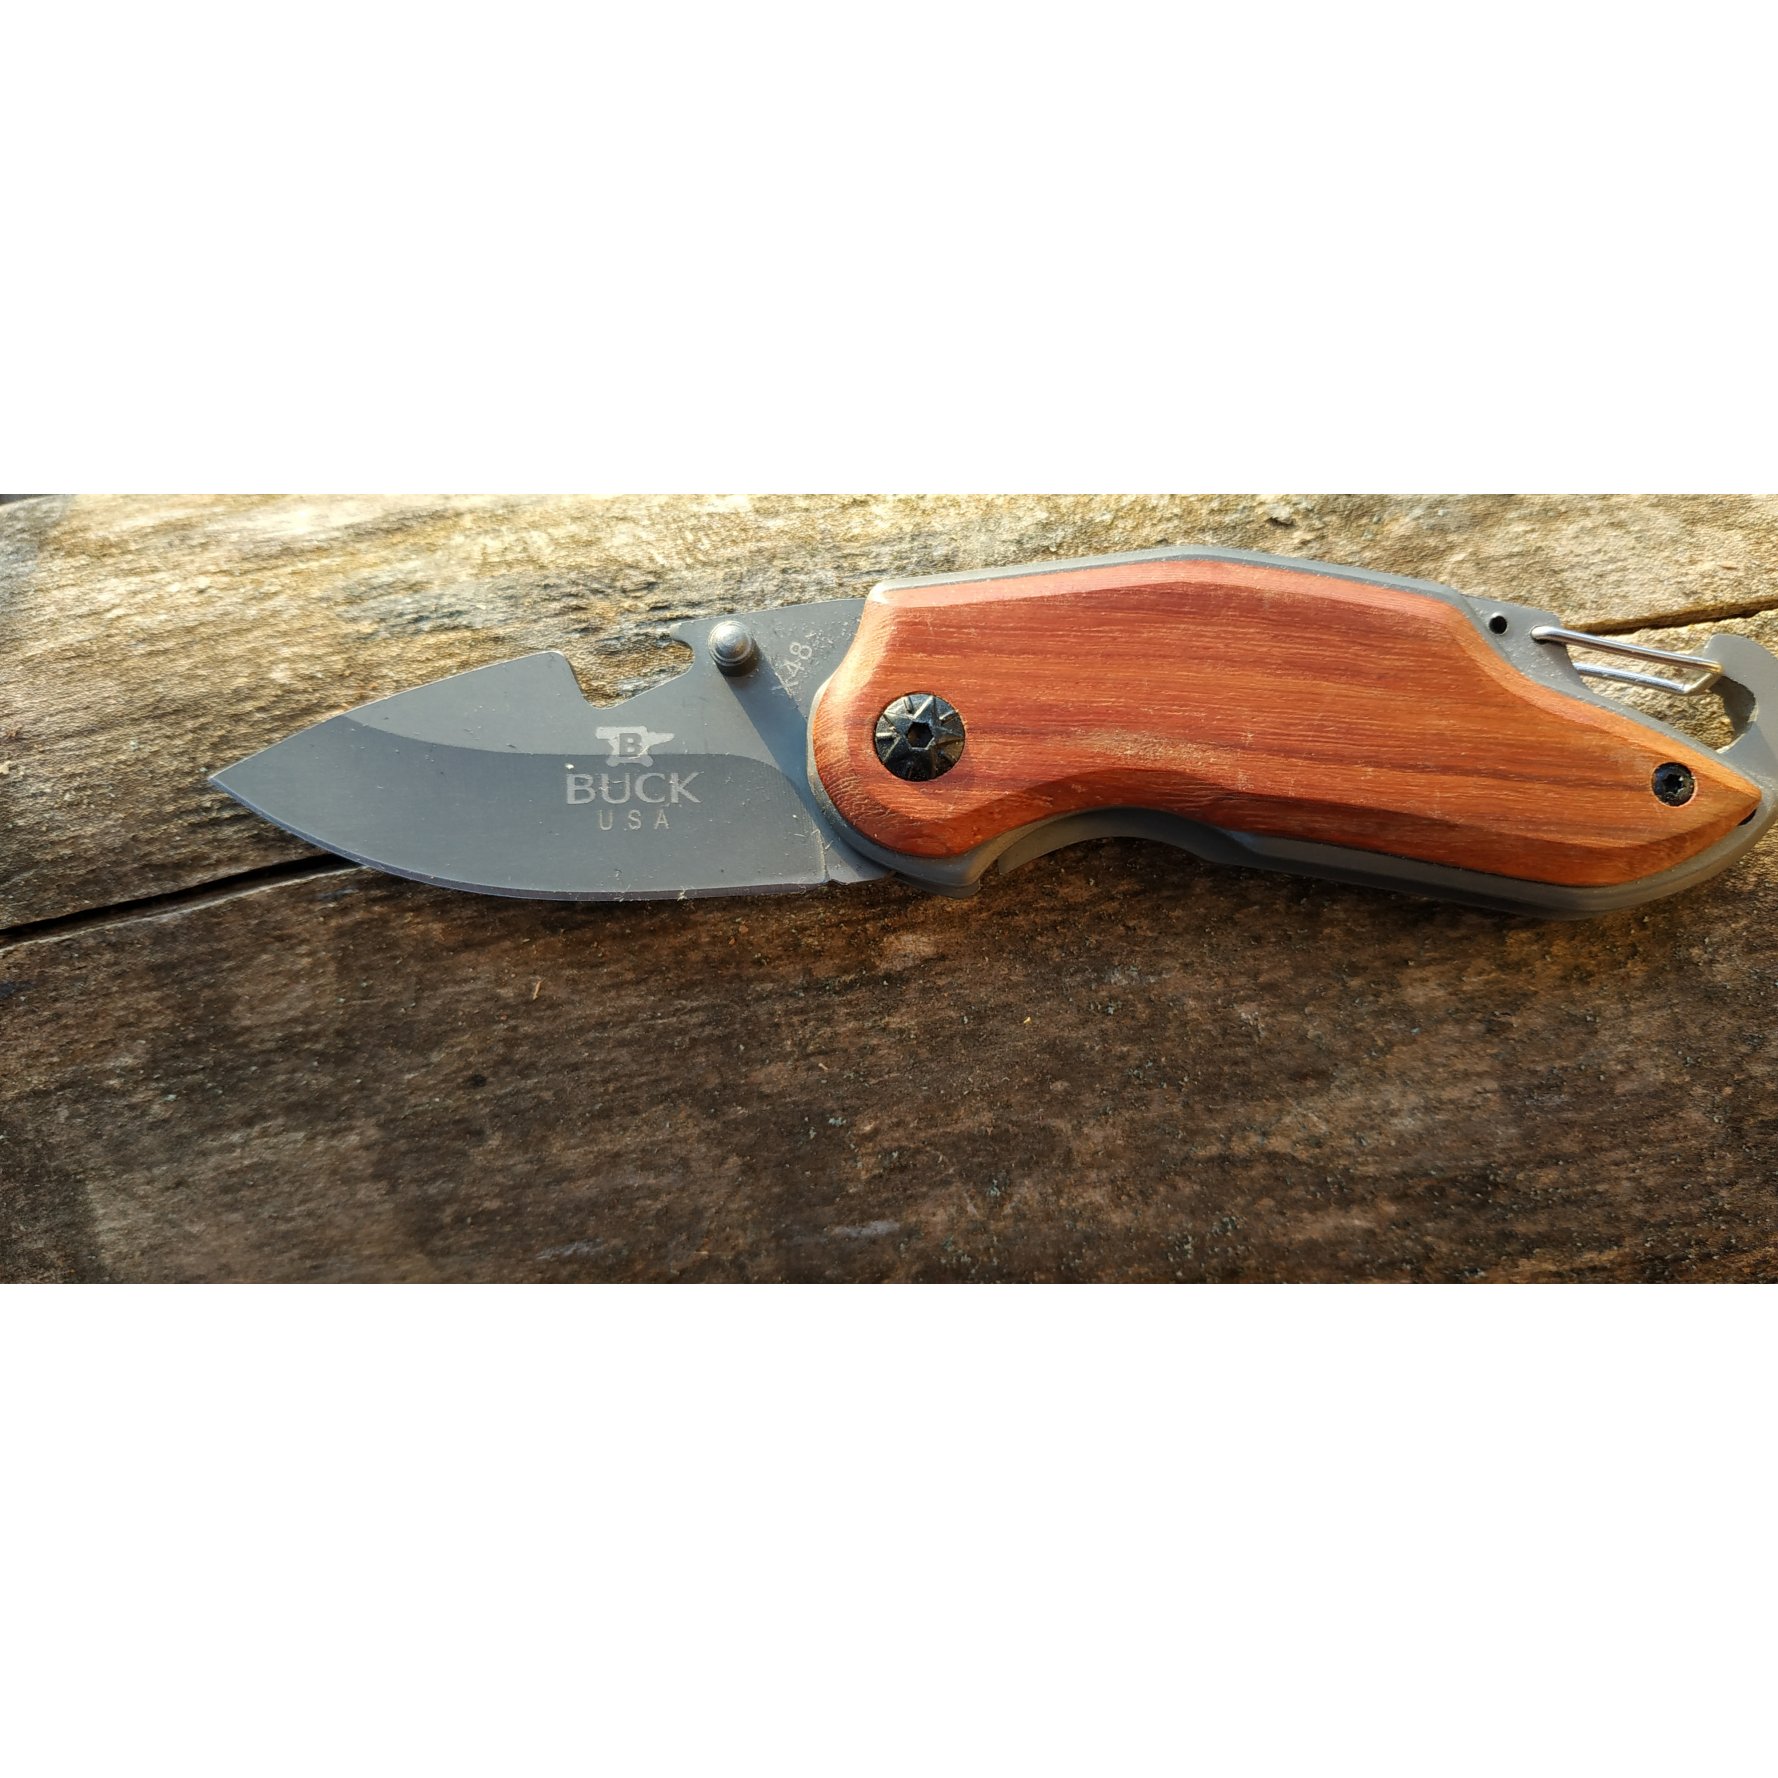 Couteau de poche pliable, manche en bois avec gravure